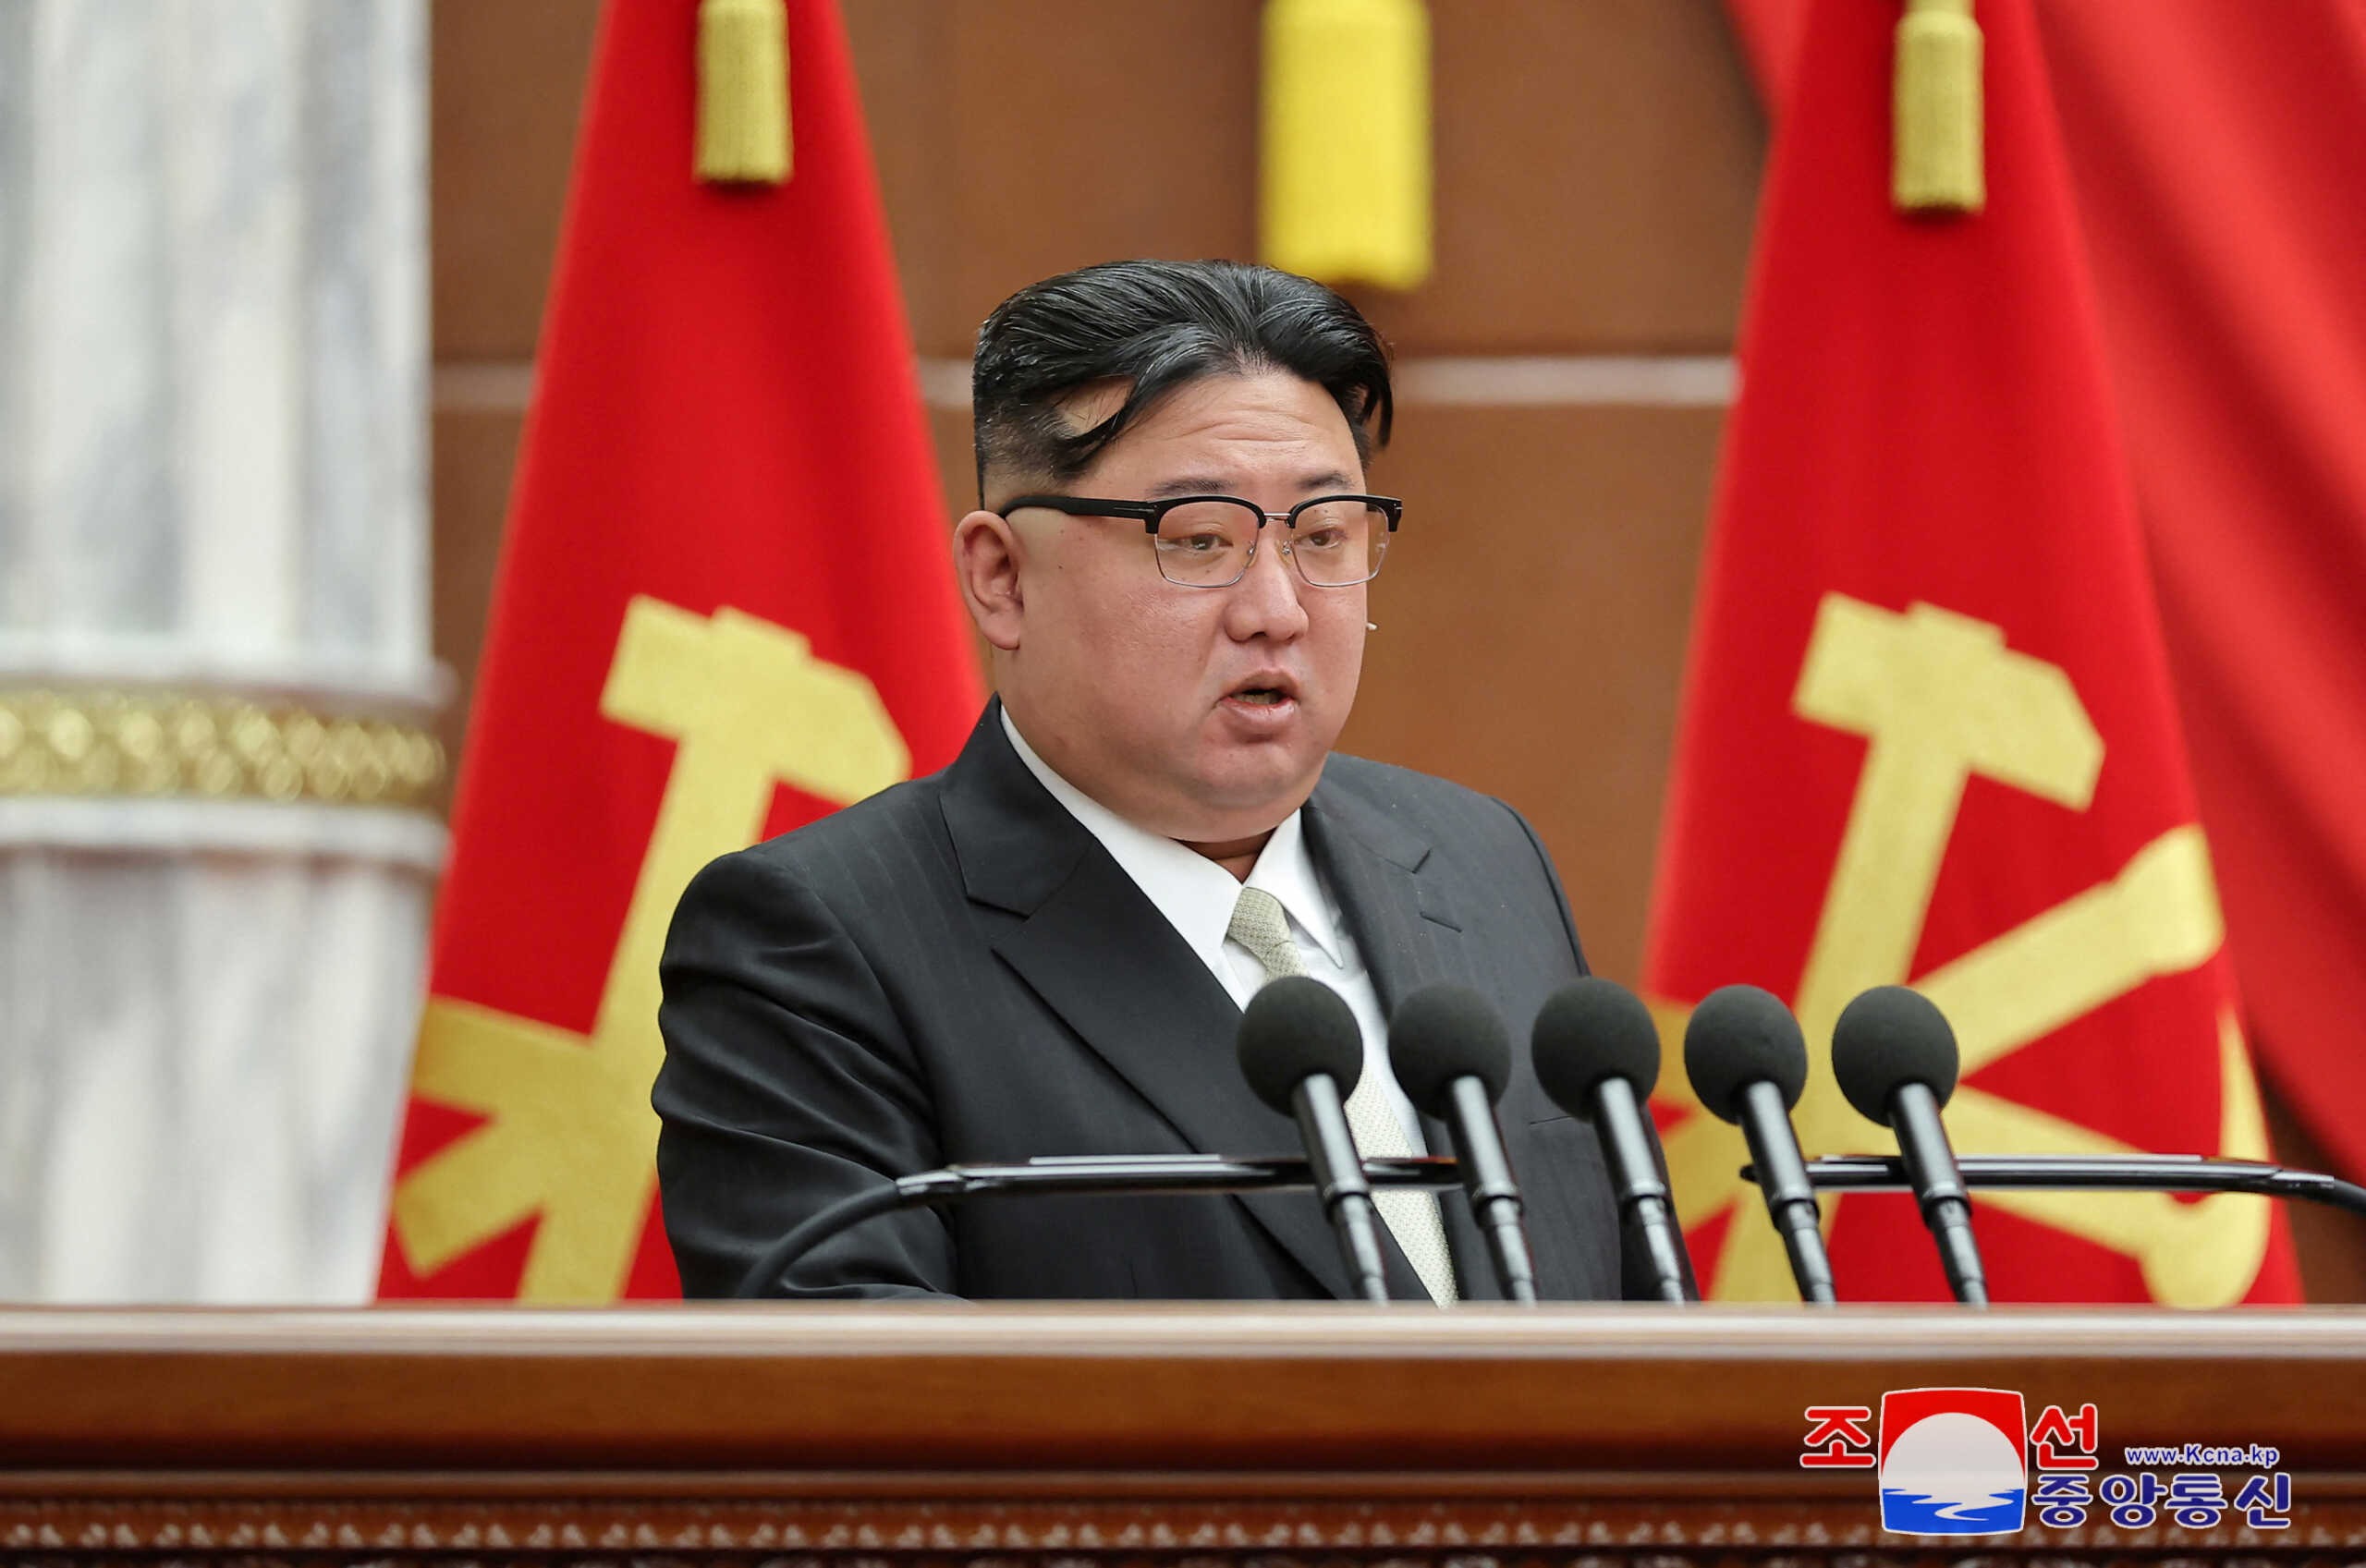 Ο Κιμ Γιονγκ Ουν ζήτησε από το στρατό να είναι έτοιμος να συντρίψει ΗΠΑ και Νότια Κορέα